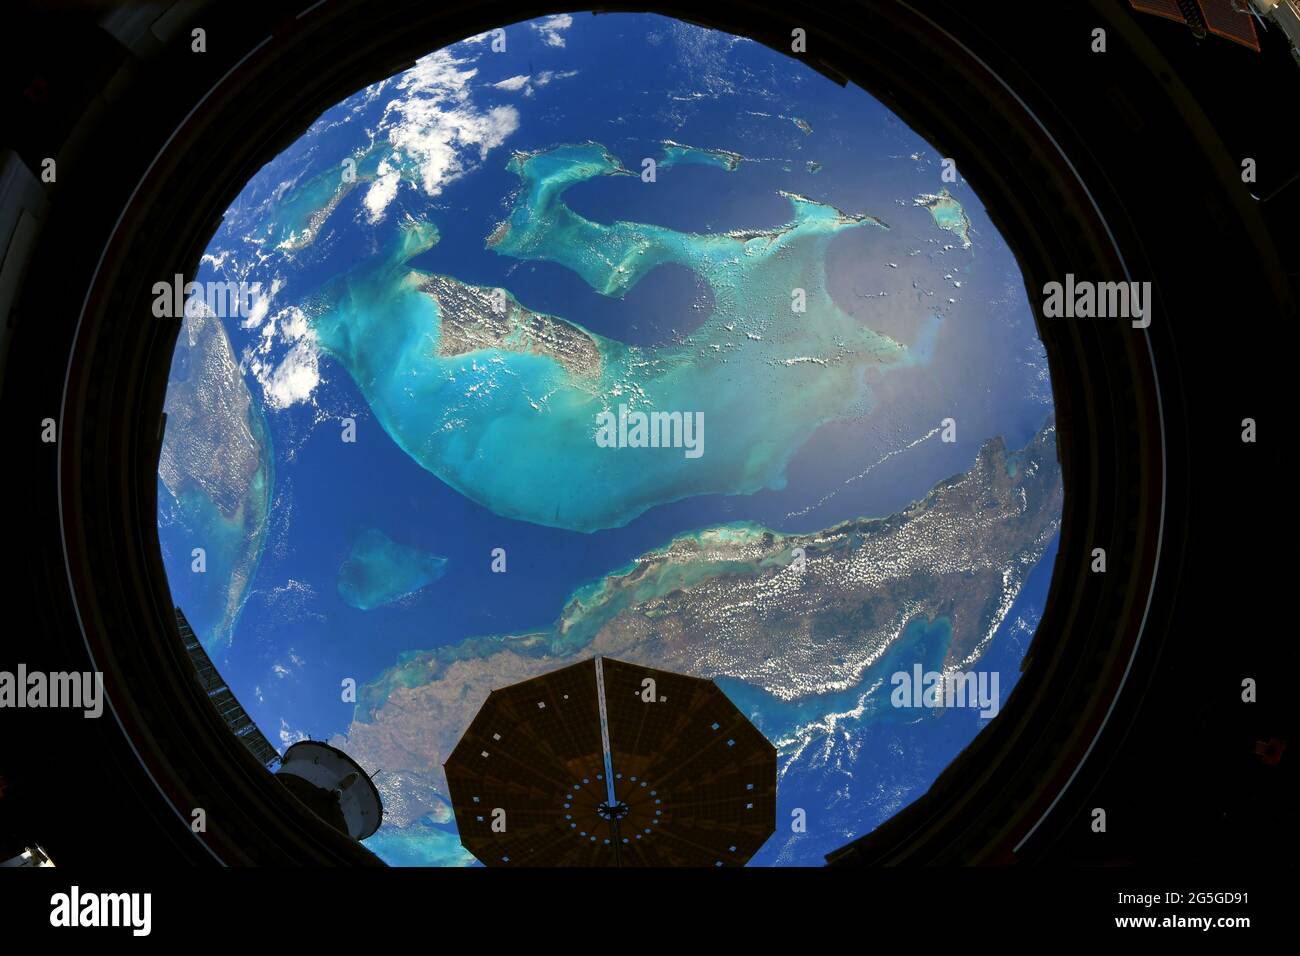 A BORDO DELLA STAZIONE SPAZIALE INTERNAZIONALE - 02 maggio 2021 - una vista incredibile del Grand Bahama e dell'isola di Cuba dalla Stazione spaziale Internazionale. F Foto Stock